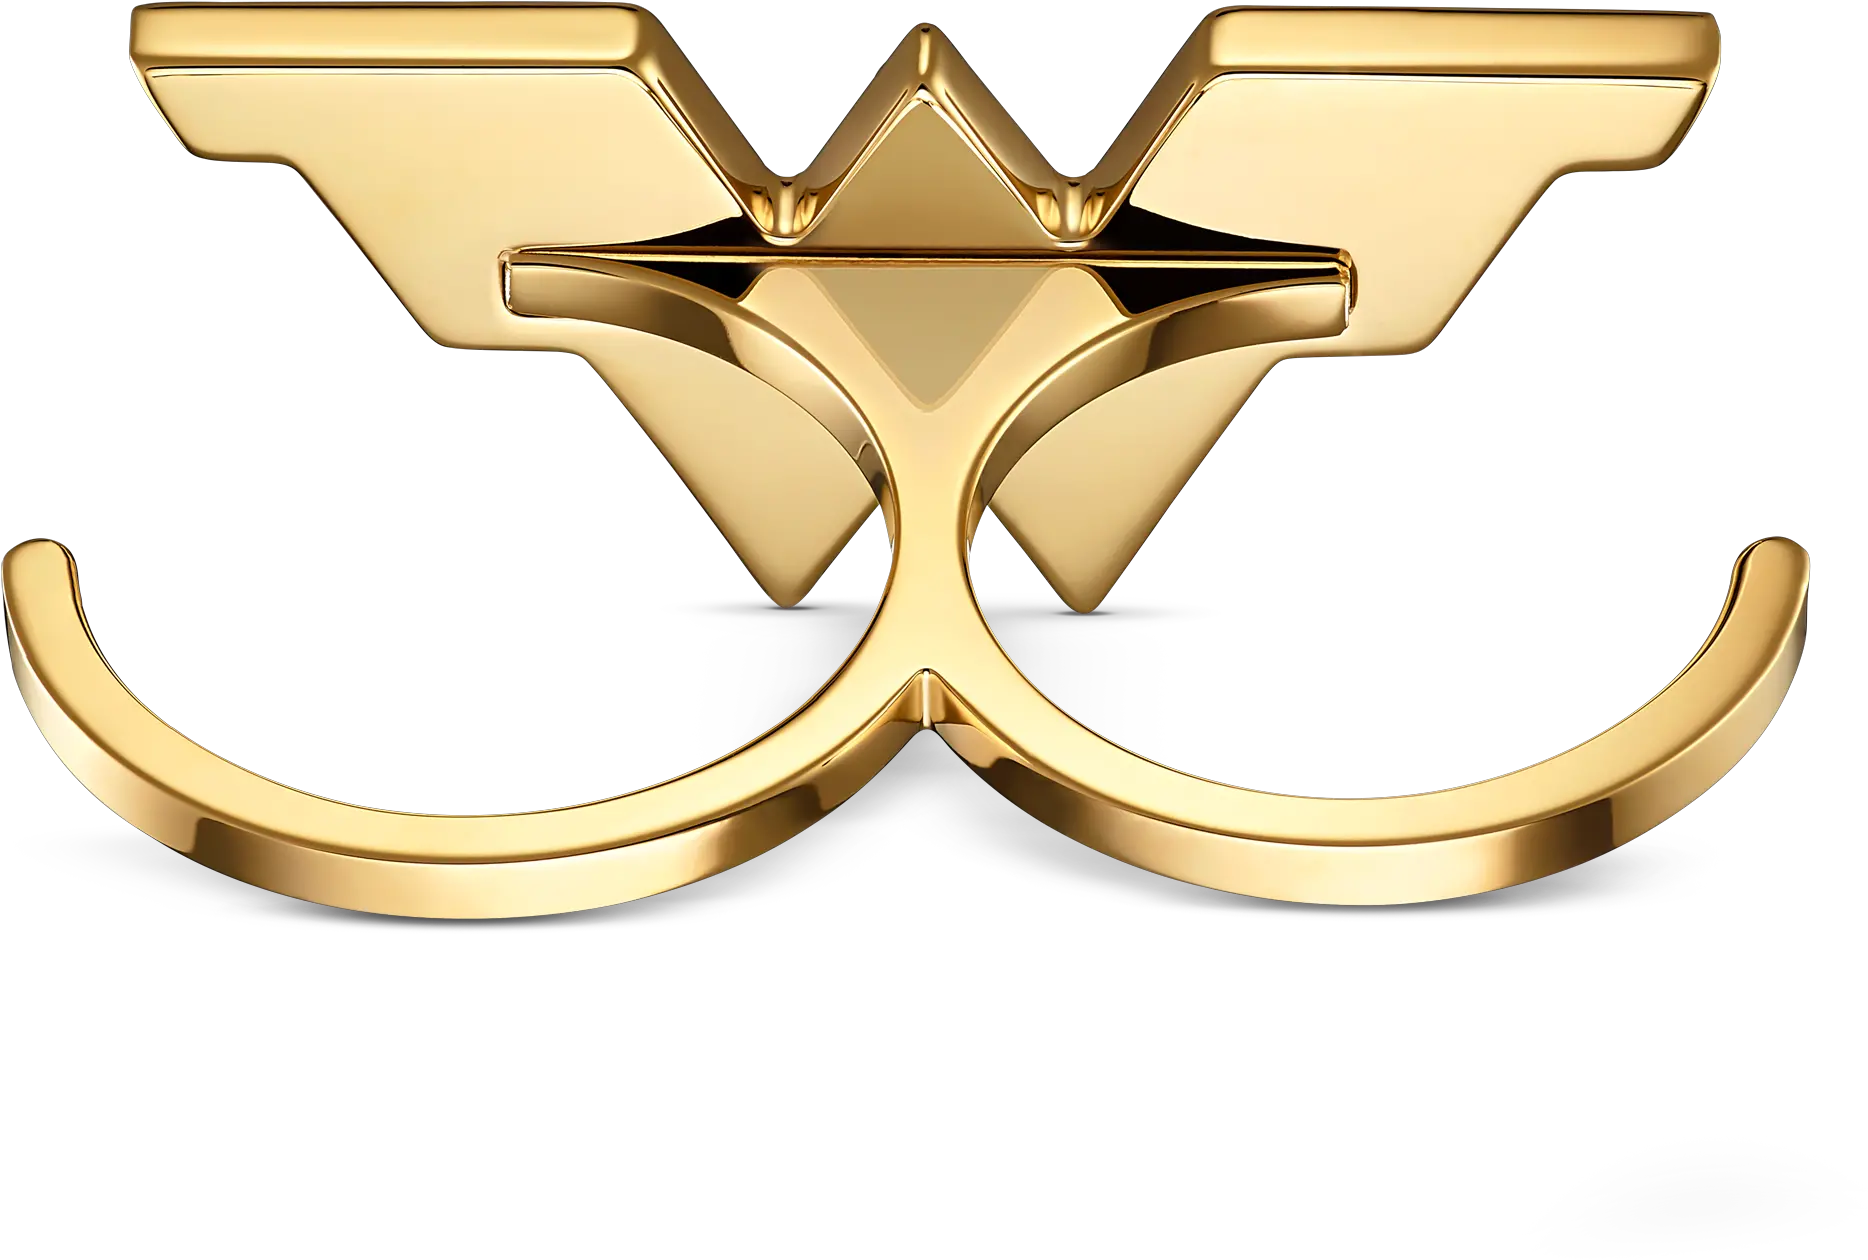 Fit Wonder Woman Double Ring Gold Tone Mixed Metal Finish Swarovski Bague Wonder Woman Png Wonder Woman Logo Images